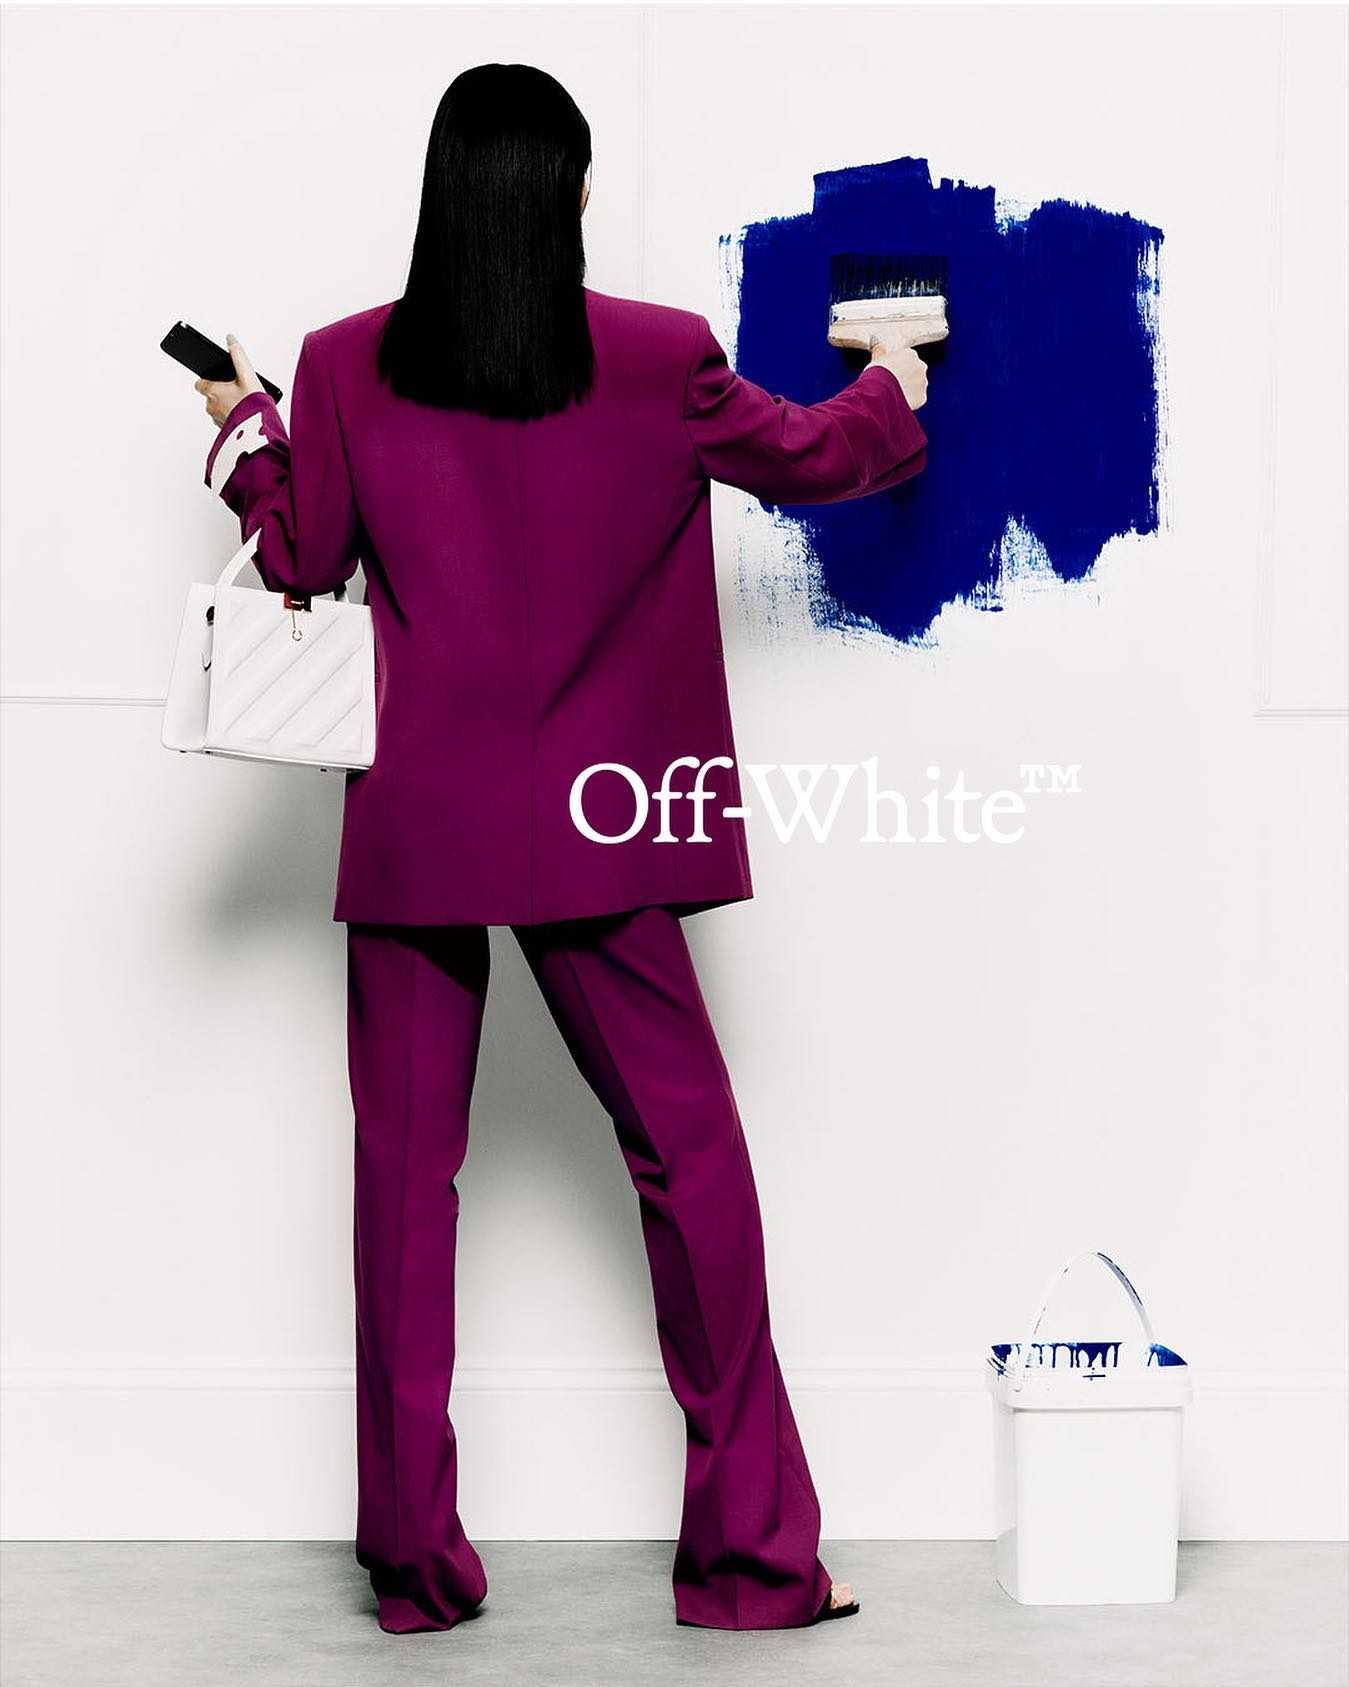 Off-White - Rafael Pavarotti - 3910